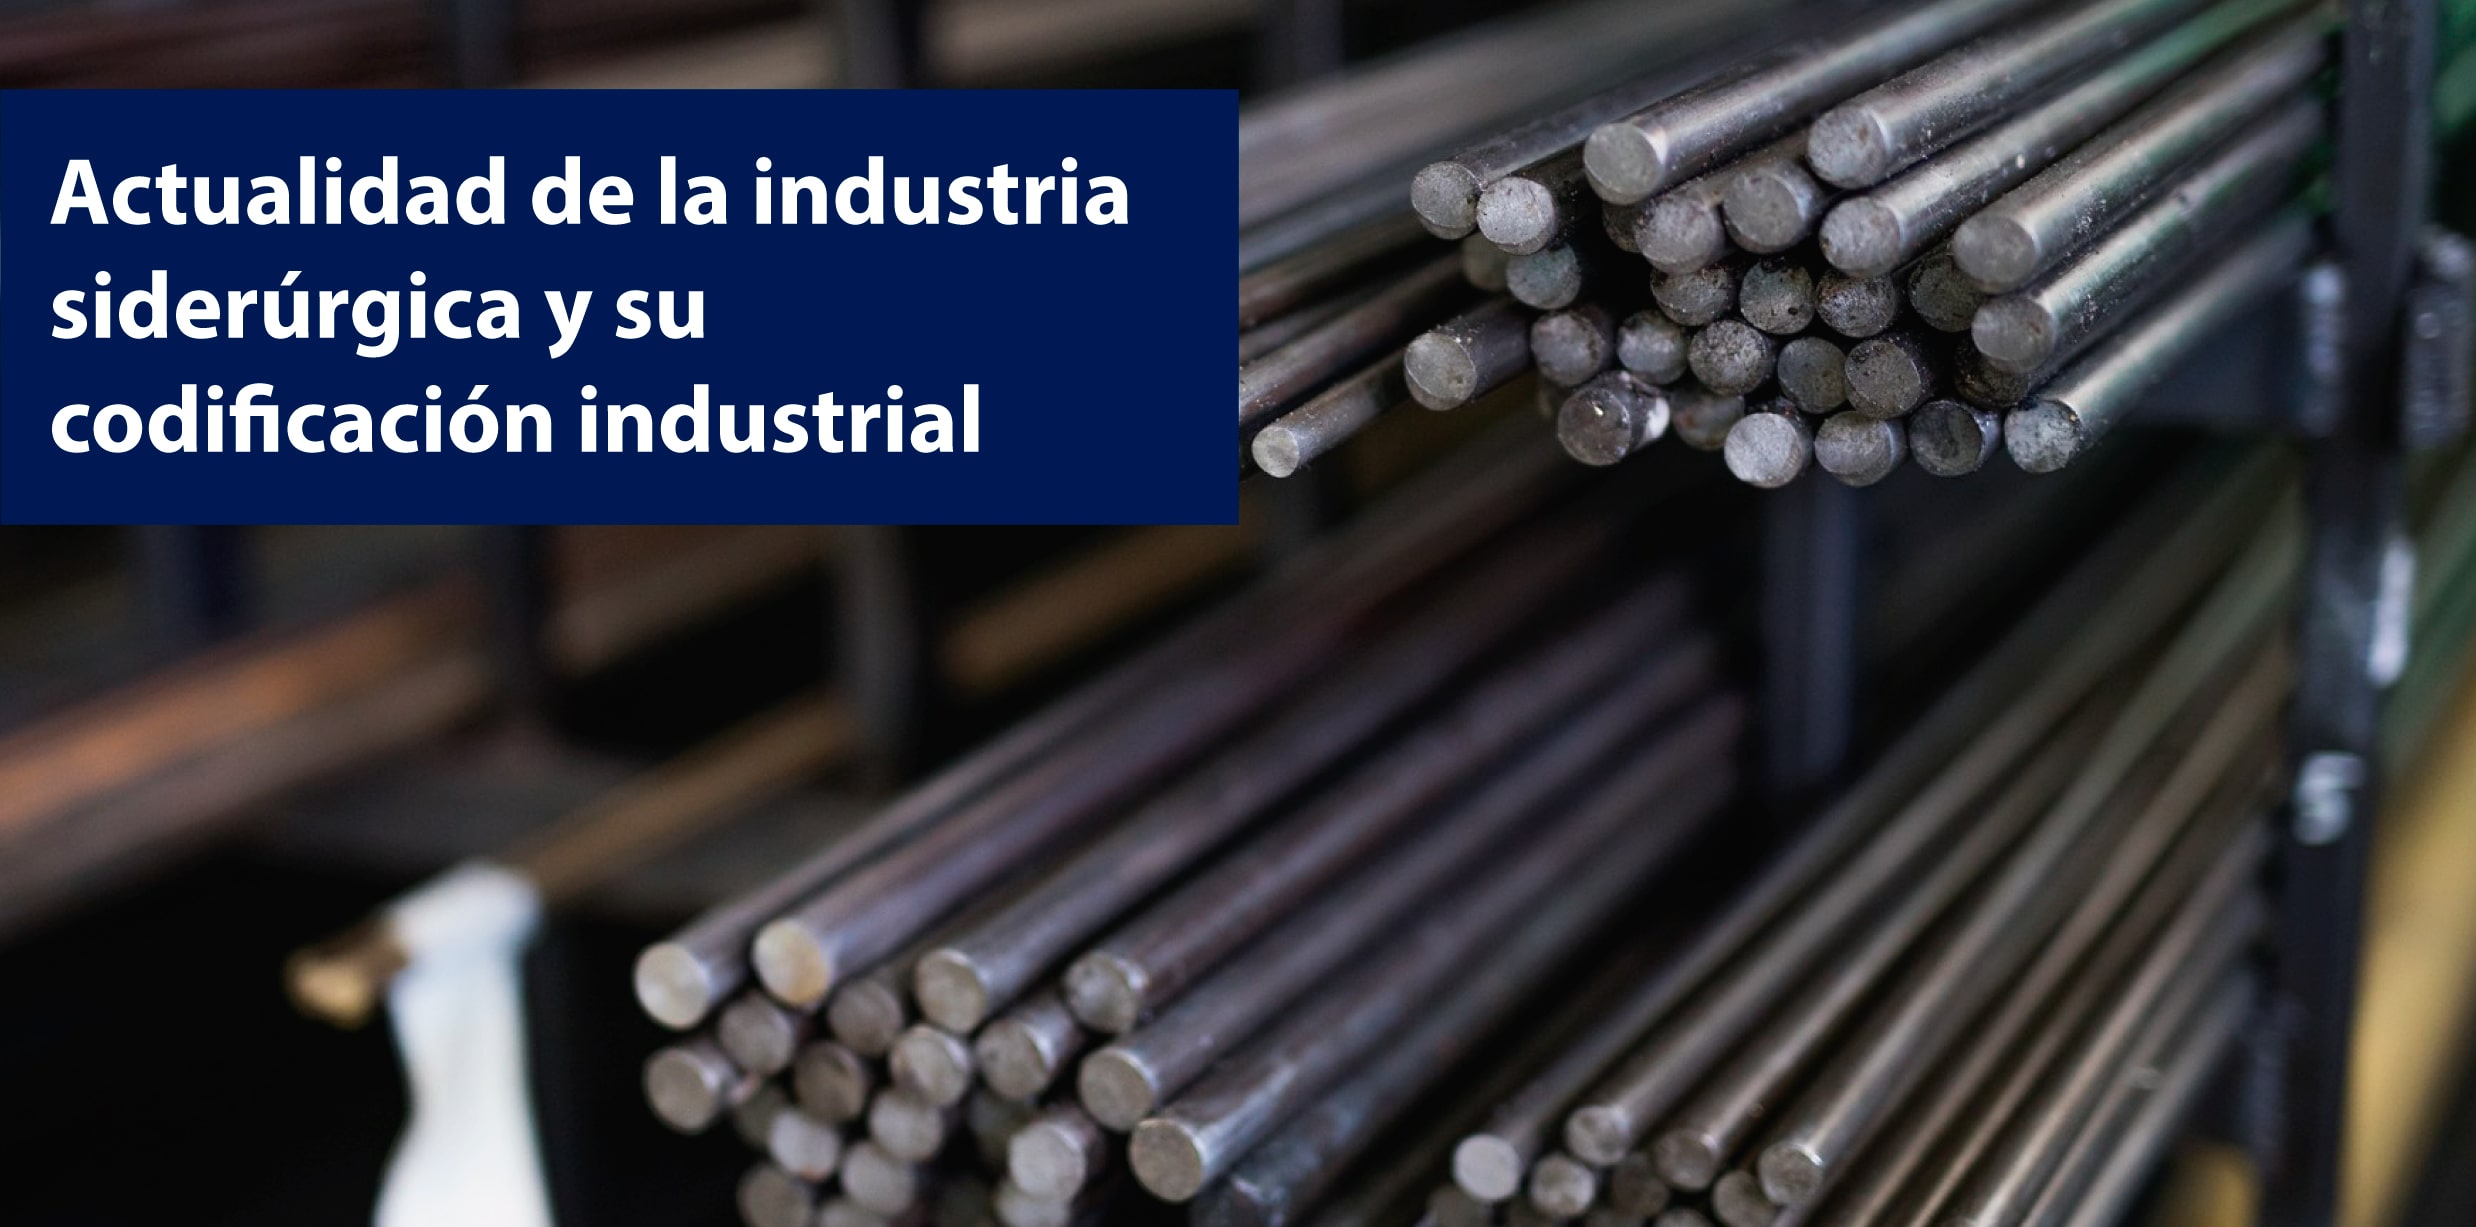 impresoras industriales para productos de la industria siderurgica